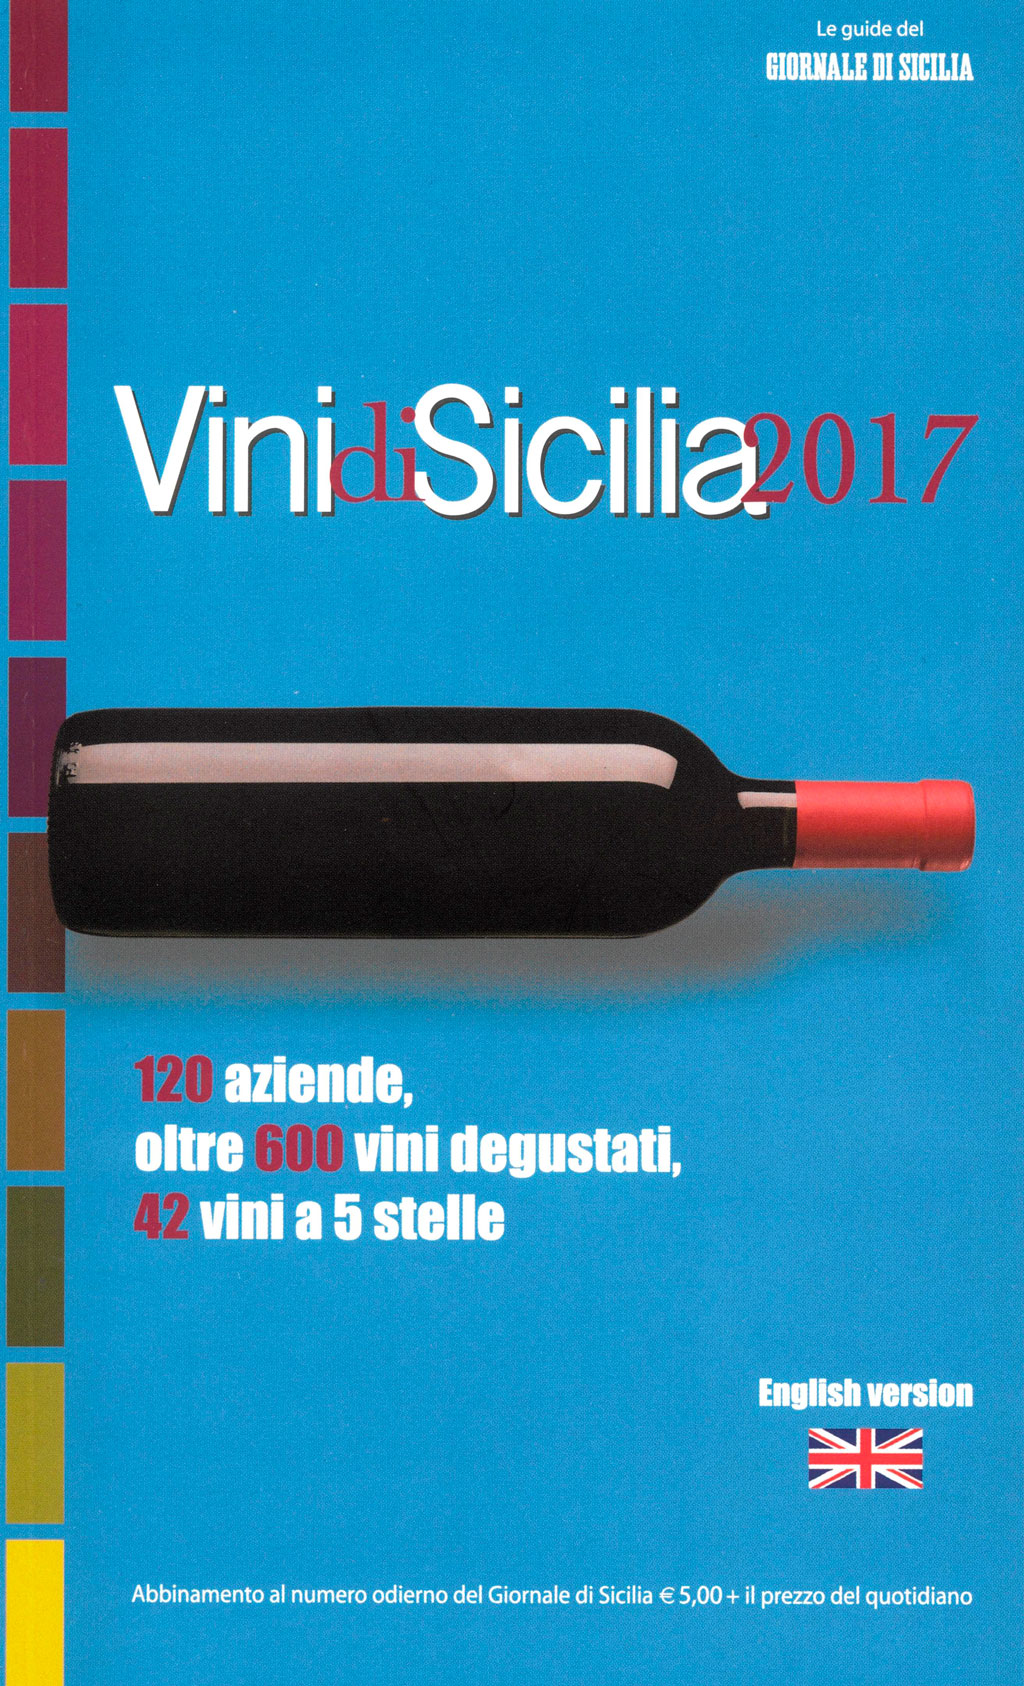 Vini di Sicilia 2017 - Giornale di Sicilia